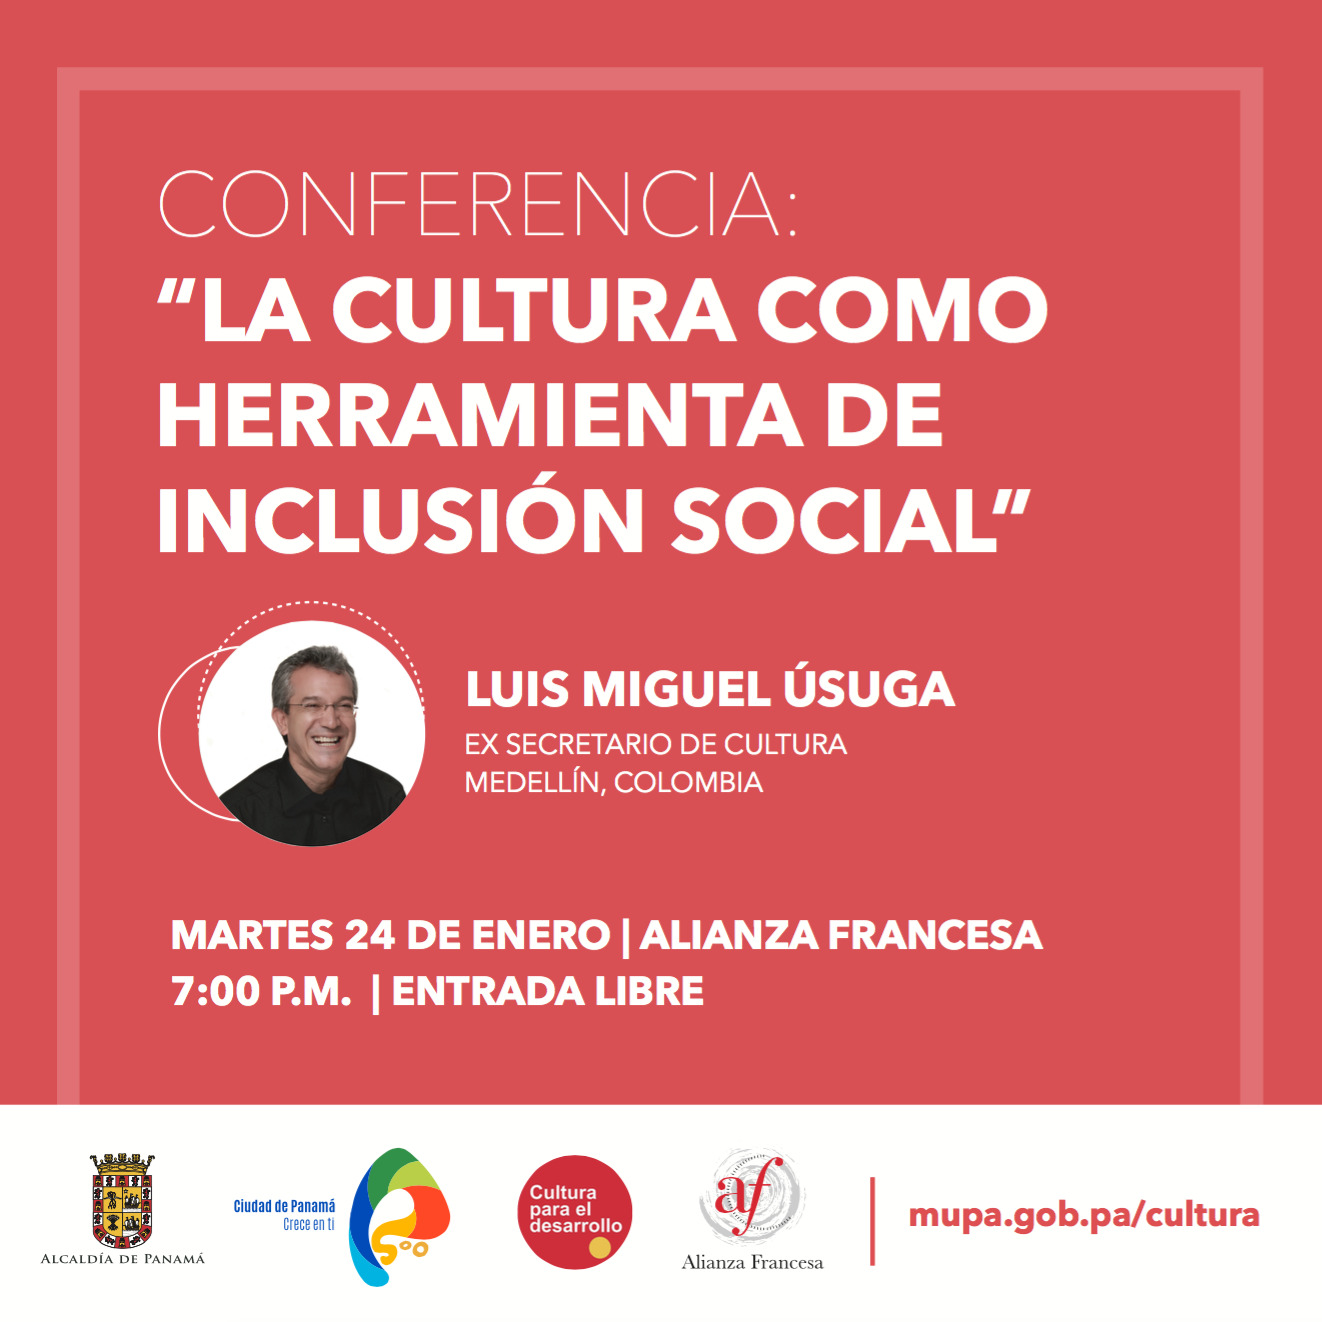 Conferencia “La Cultura como herramienta de inclusión social”